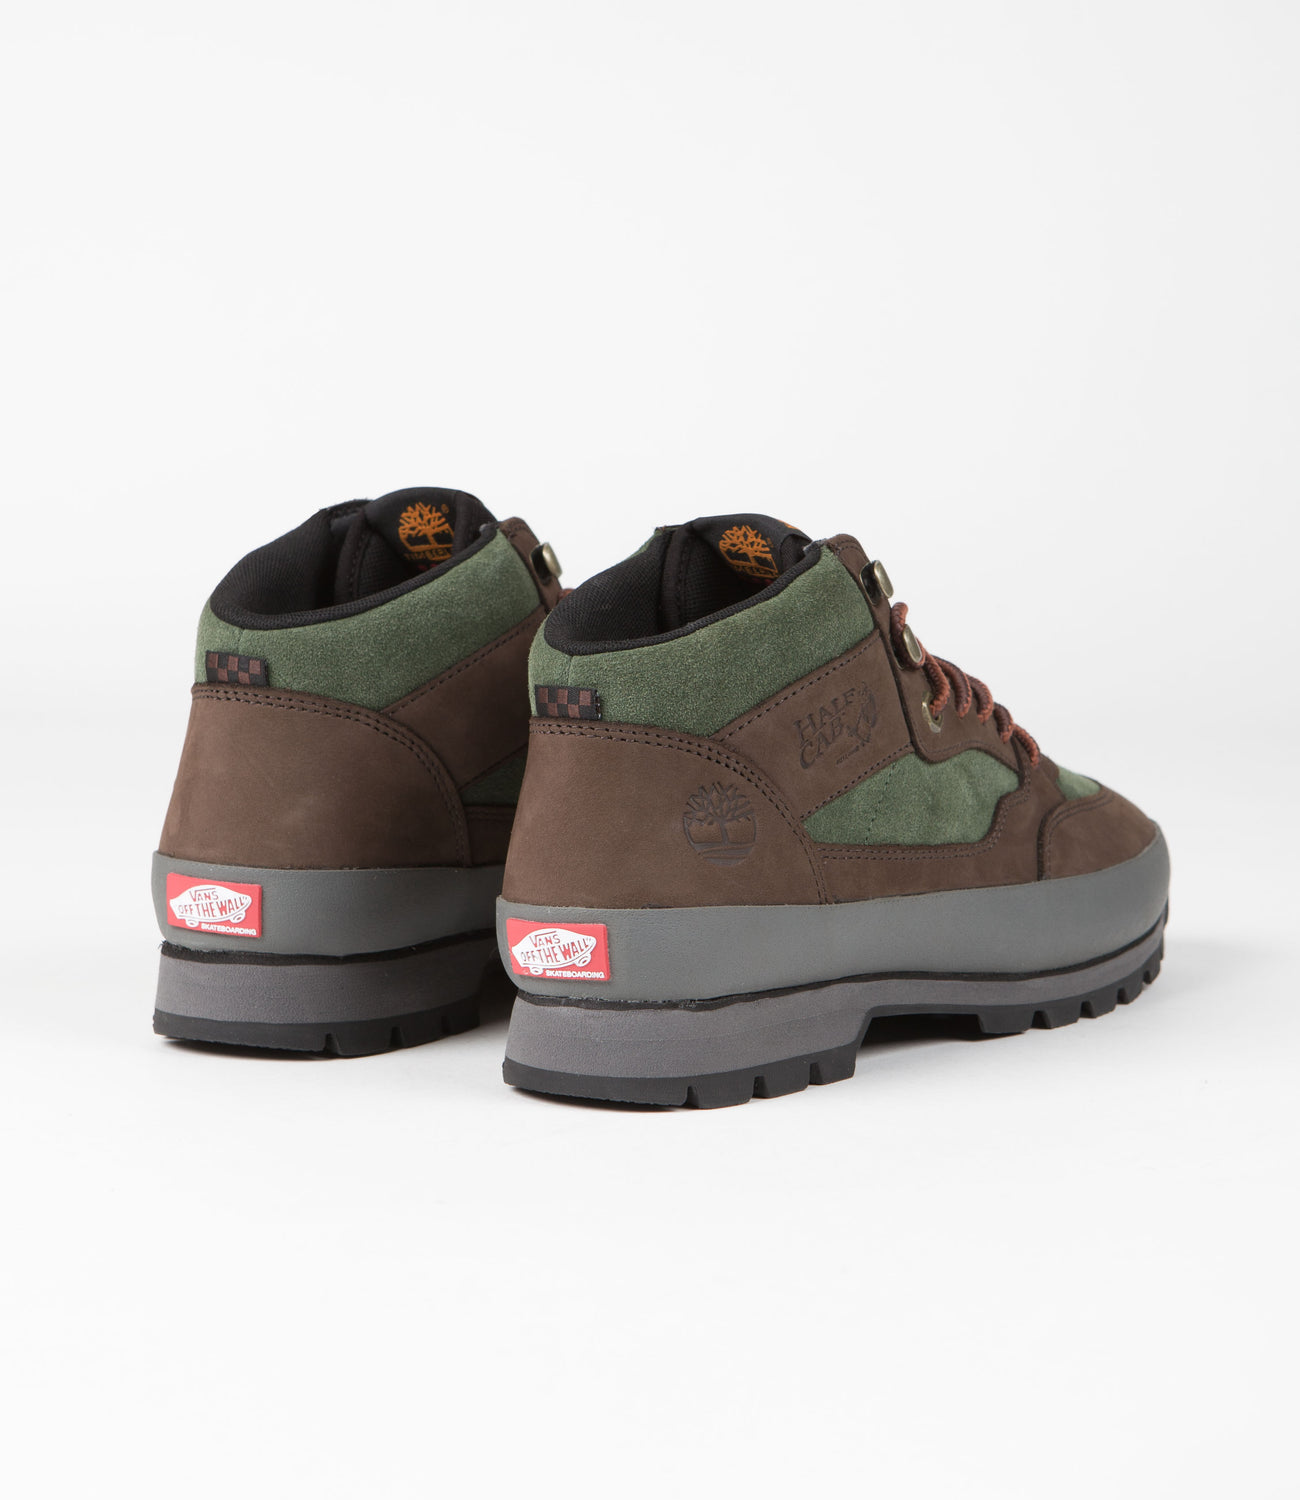 Vans x Timberland Half Cab Hiker Shoes   Green / Brown   Flatspot